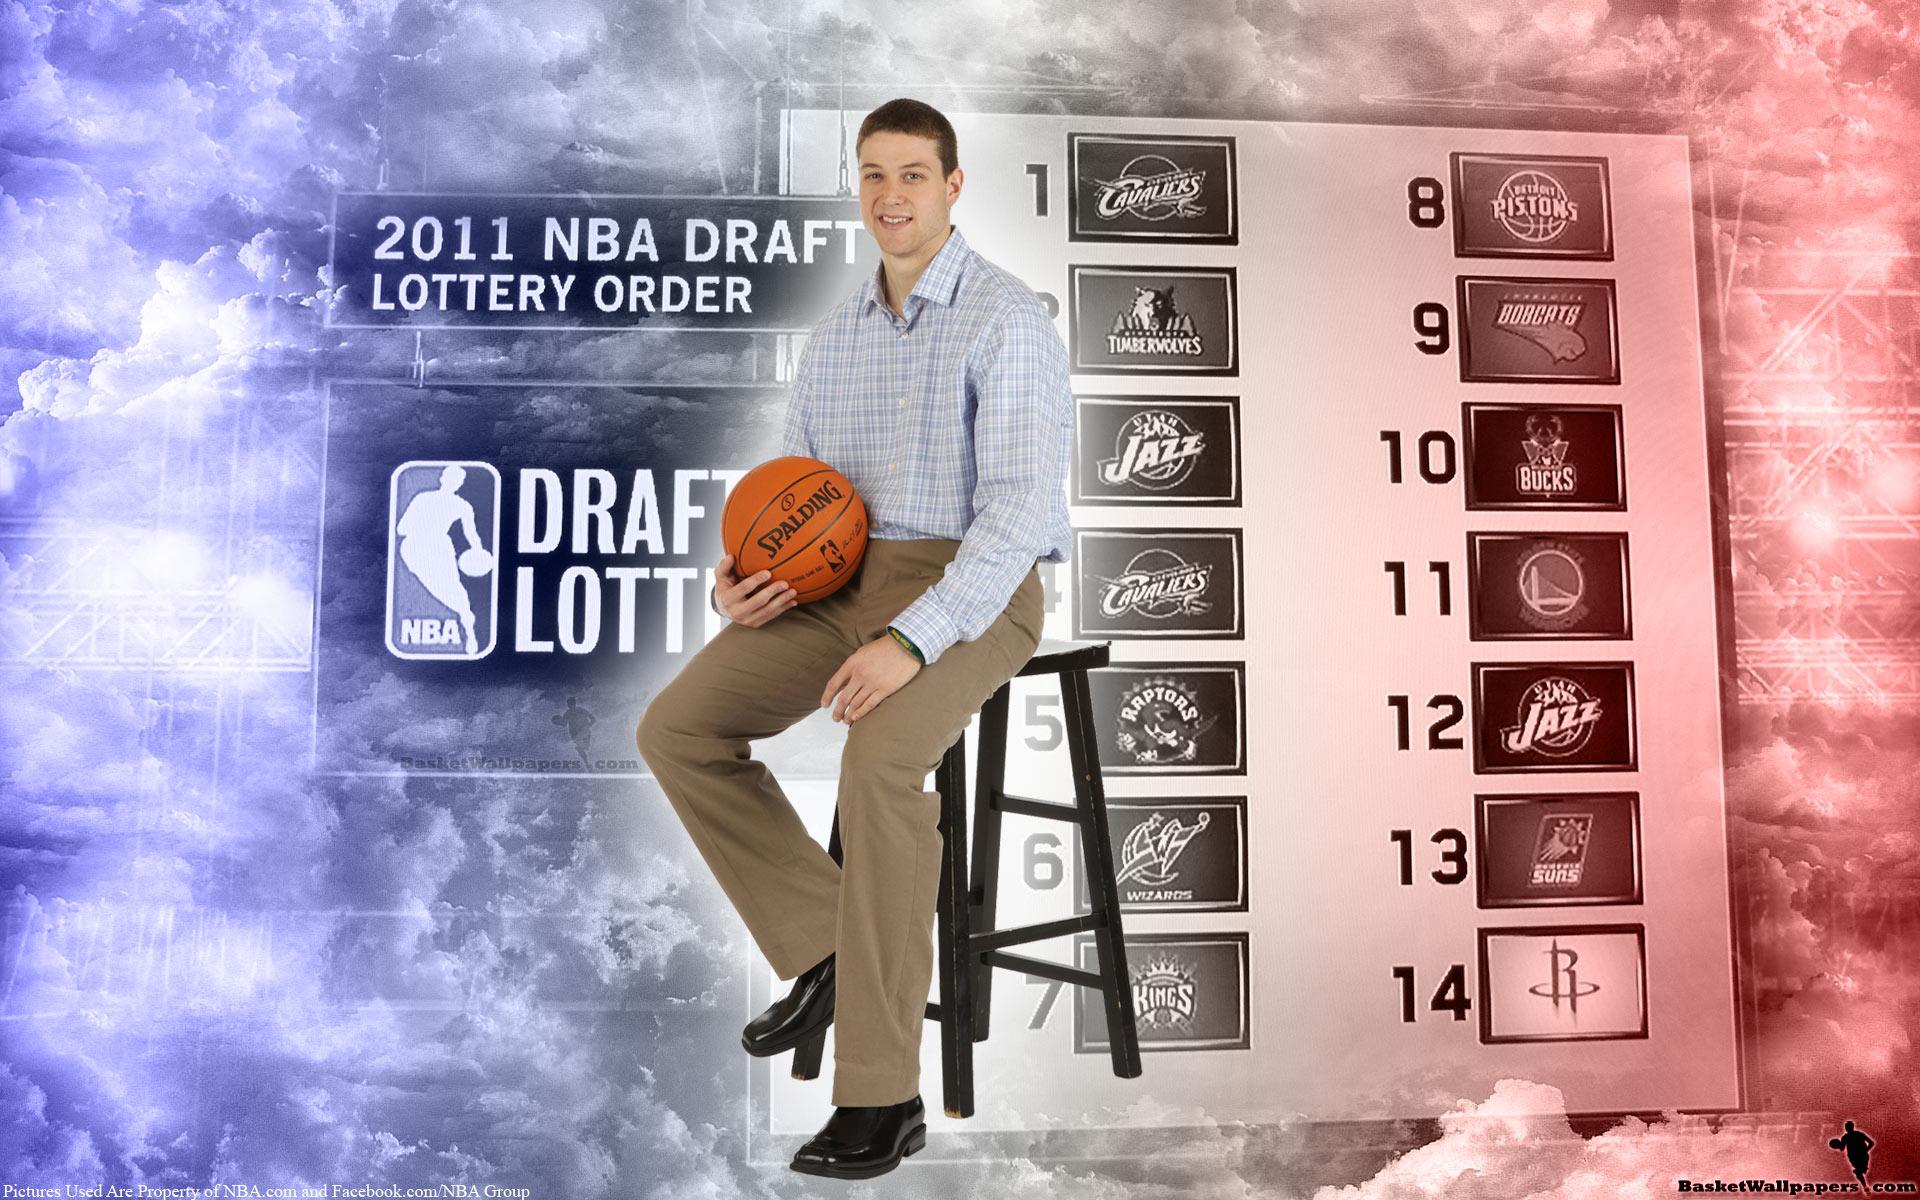 Jimmer Fredette 2011 NBA Draft Widescreen Wallpaper. Basketball